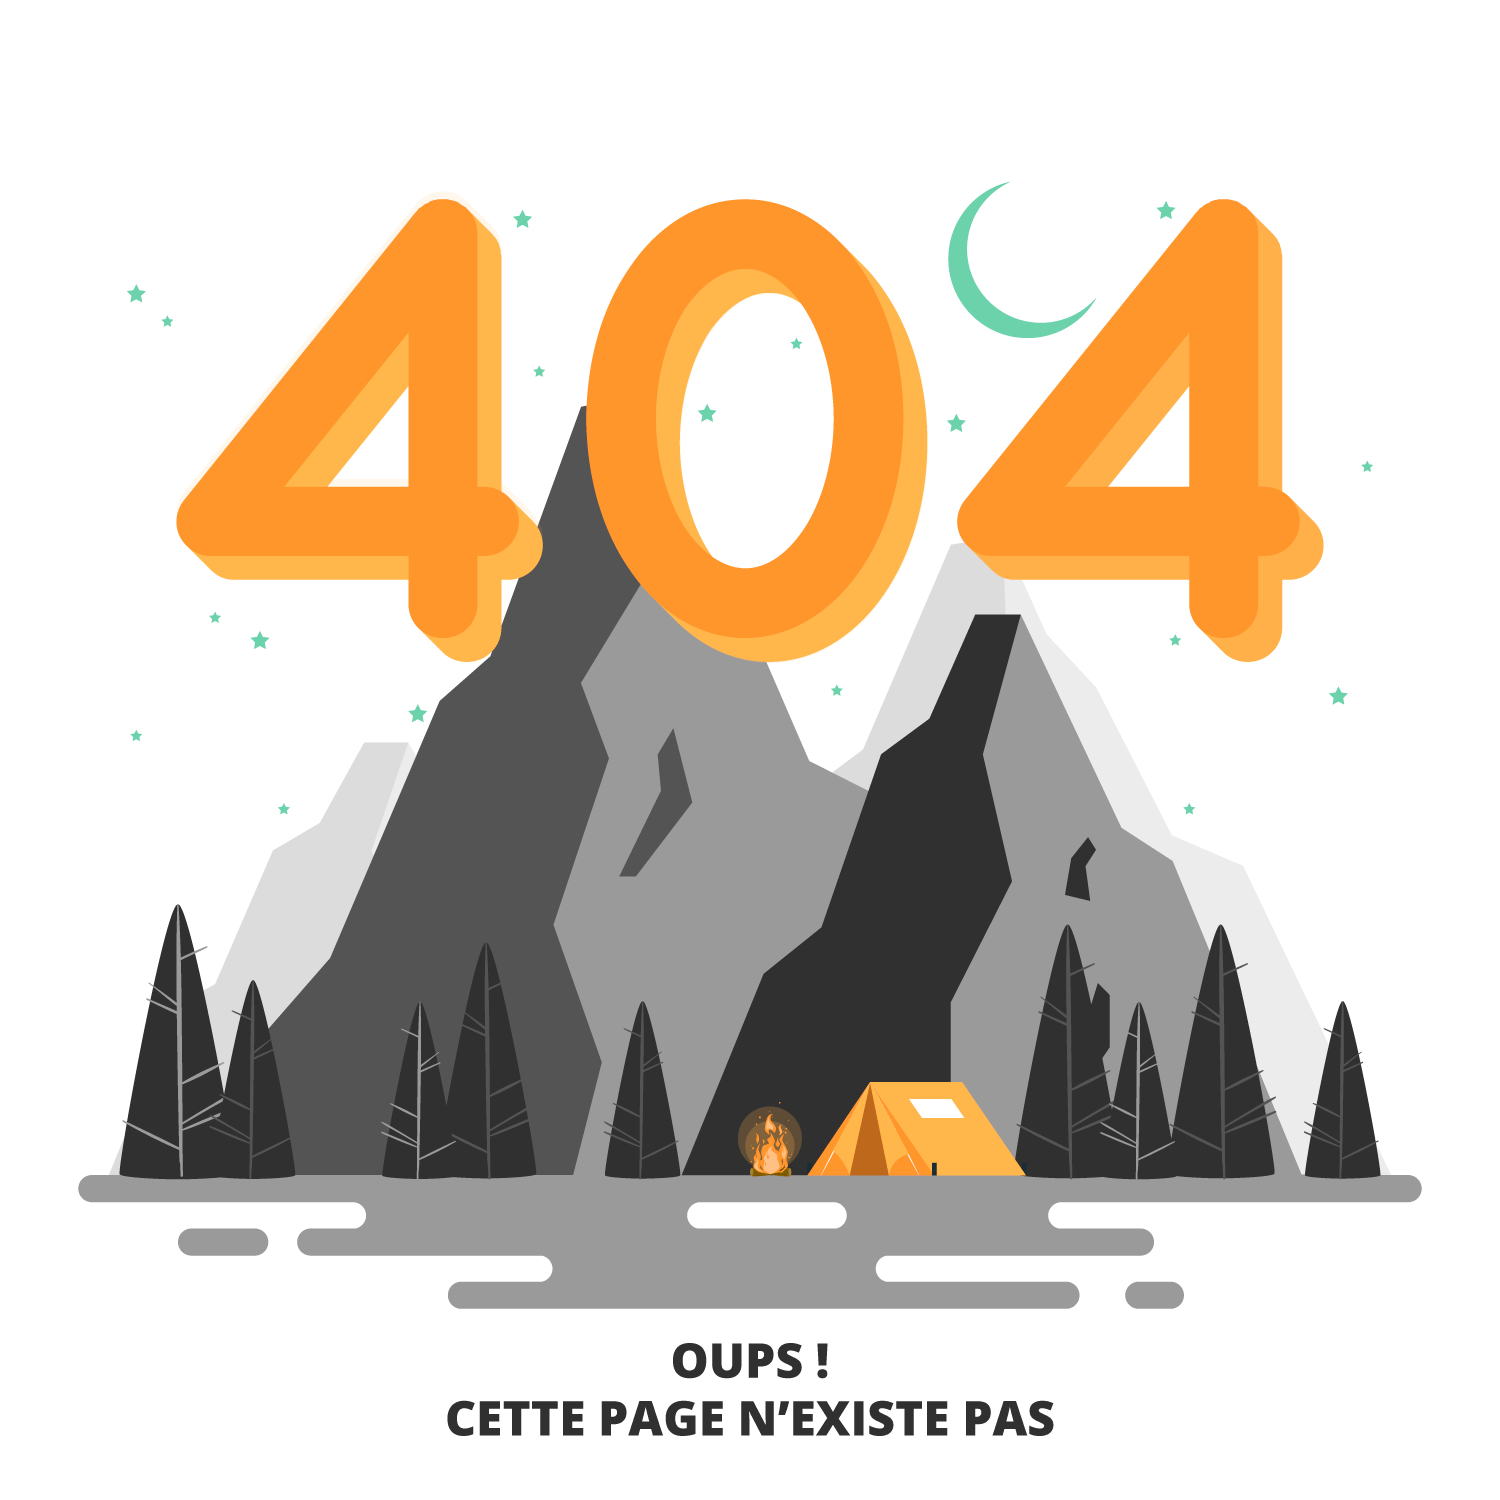 Erreur 404 - Image d'illustration : Tente au pied des montagne "Oups ! Cette page n'existe pas"